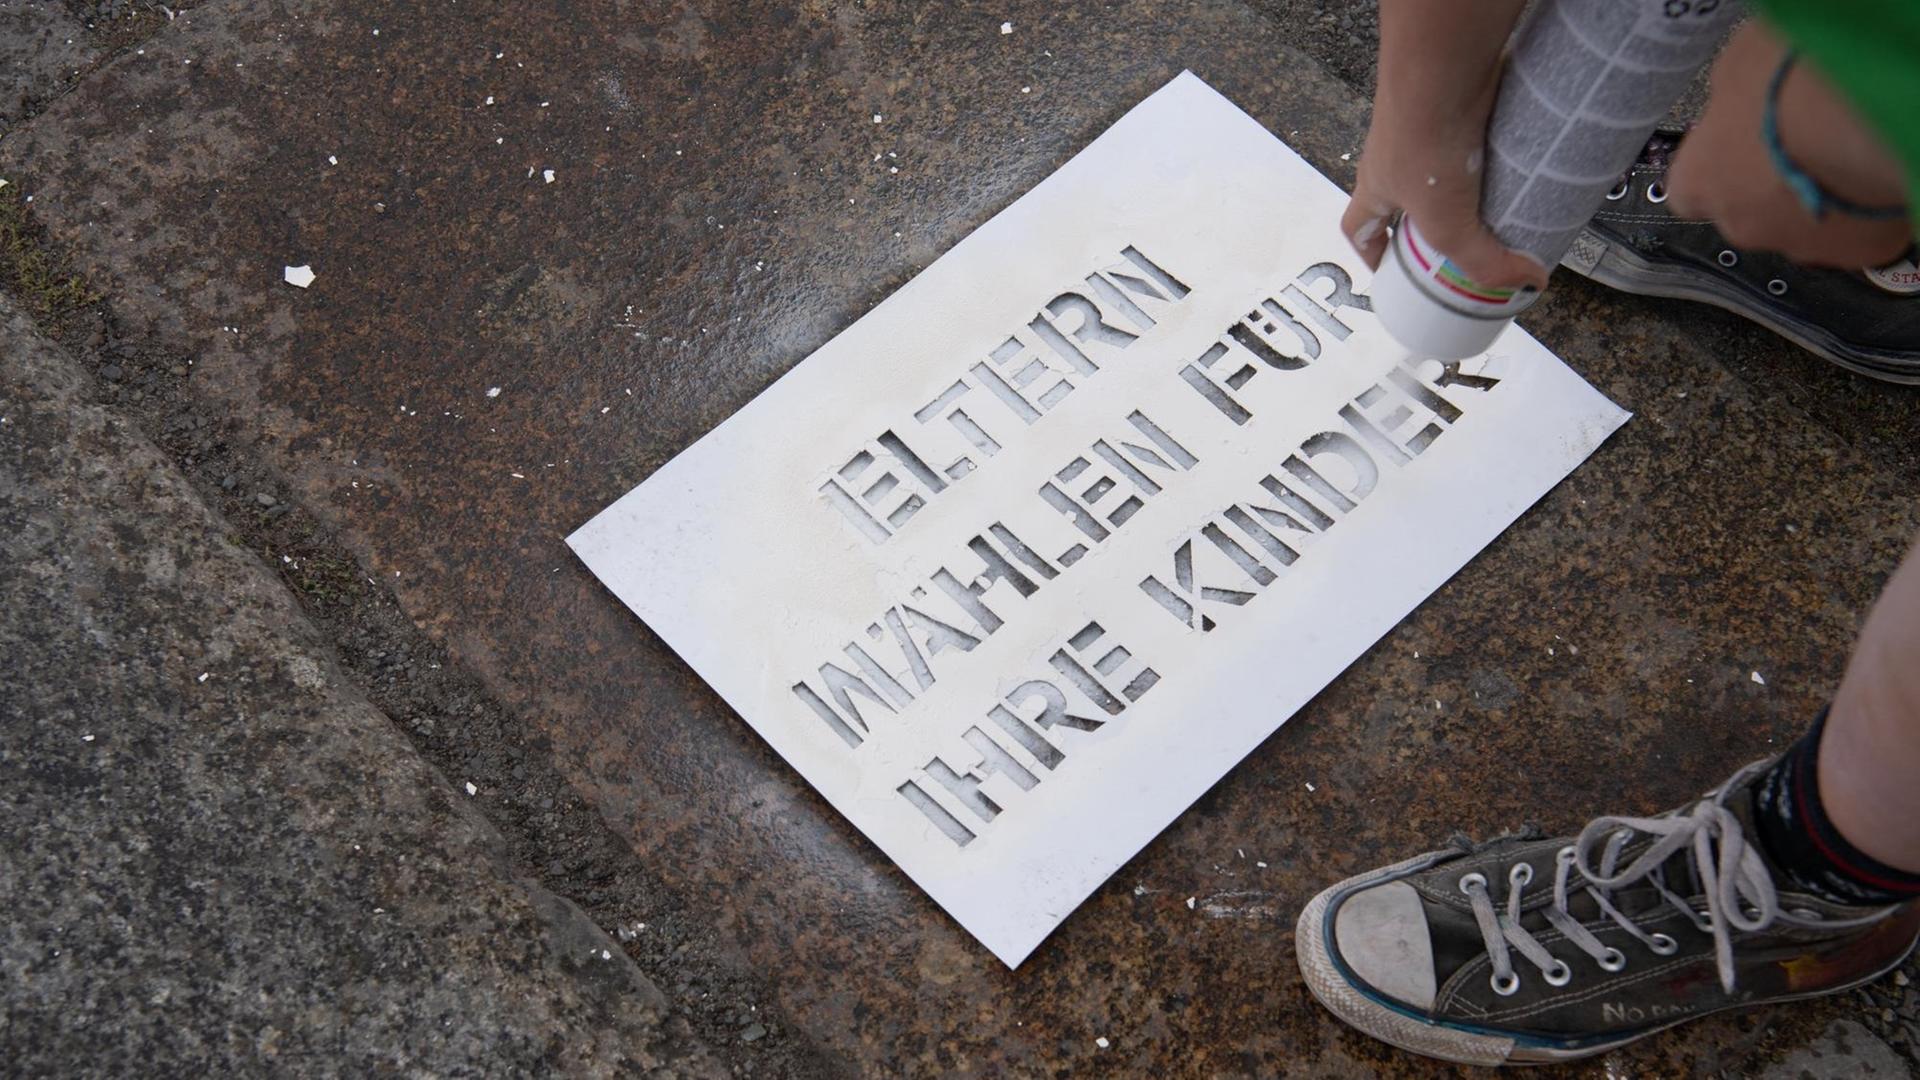 Jemand schreibt mit weißer Farbe und einer Schablone die Worte "Eltern wählen für ihre Kinder" auf den Boden.